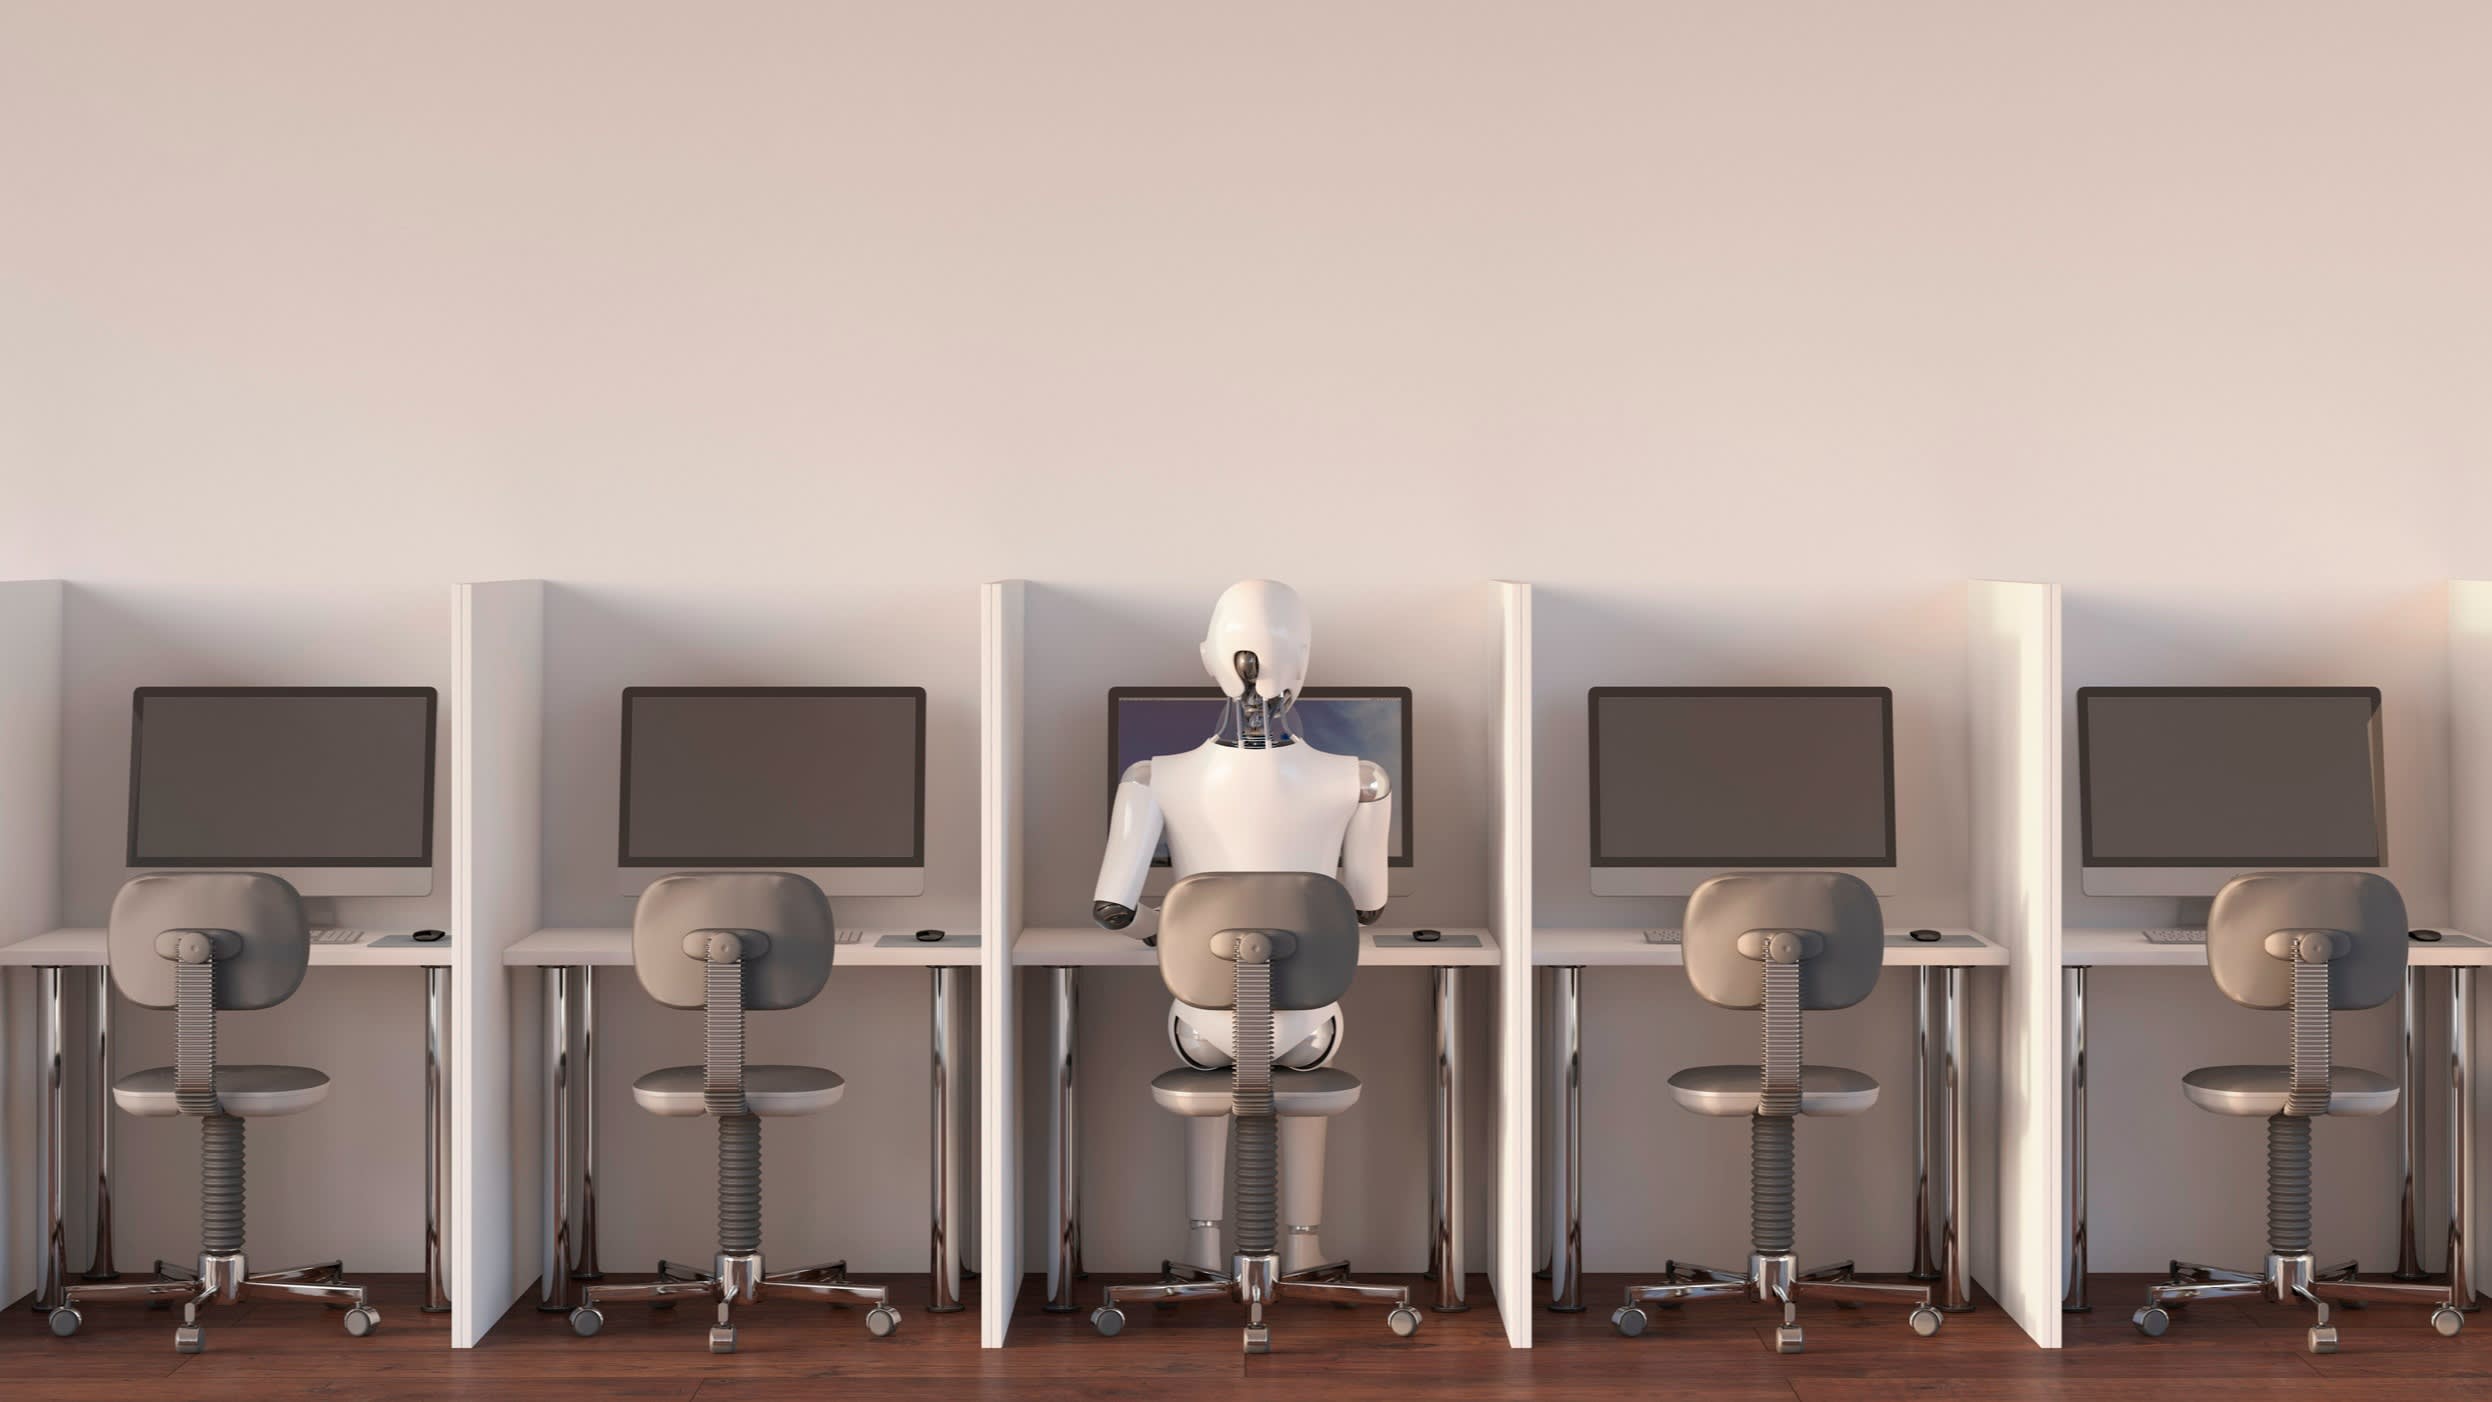 A robot sits at a bank of desks